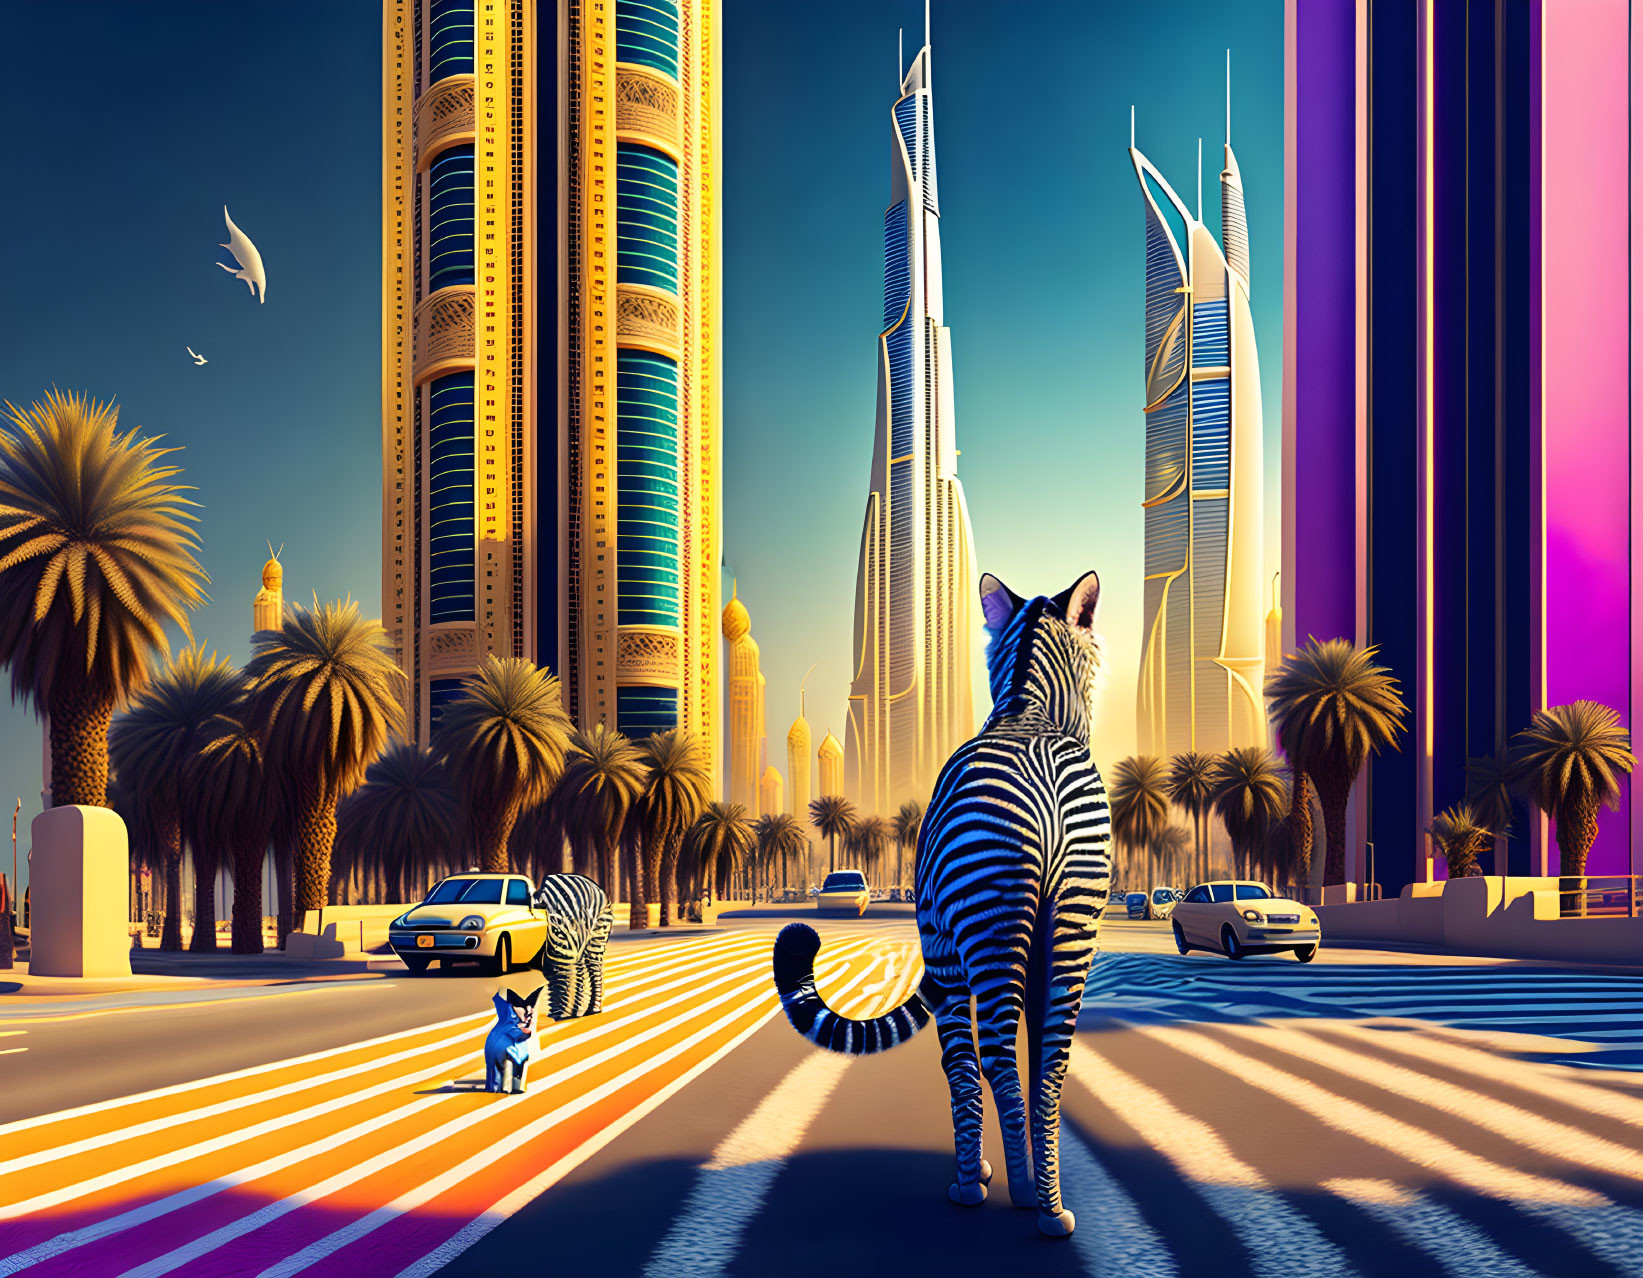 Striped zebras in colorful cityscape with futuristic skyscrapers